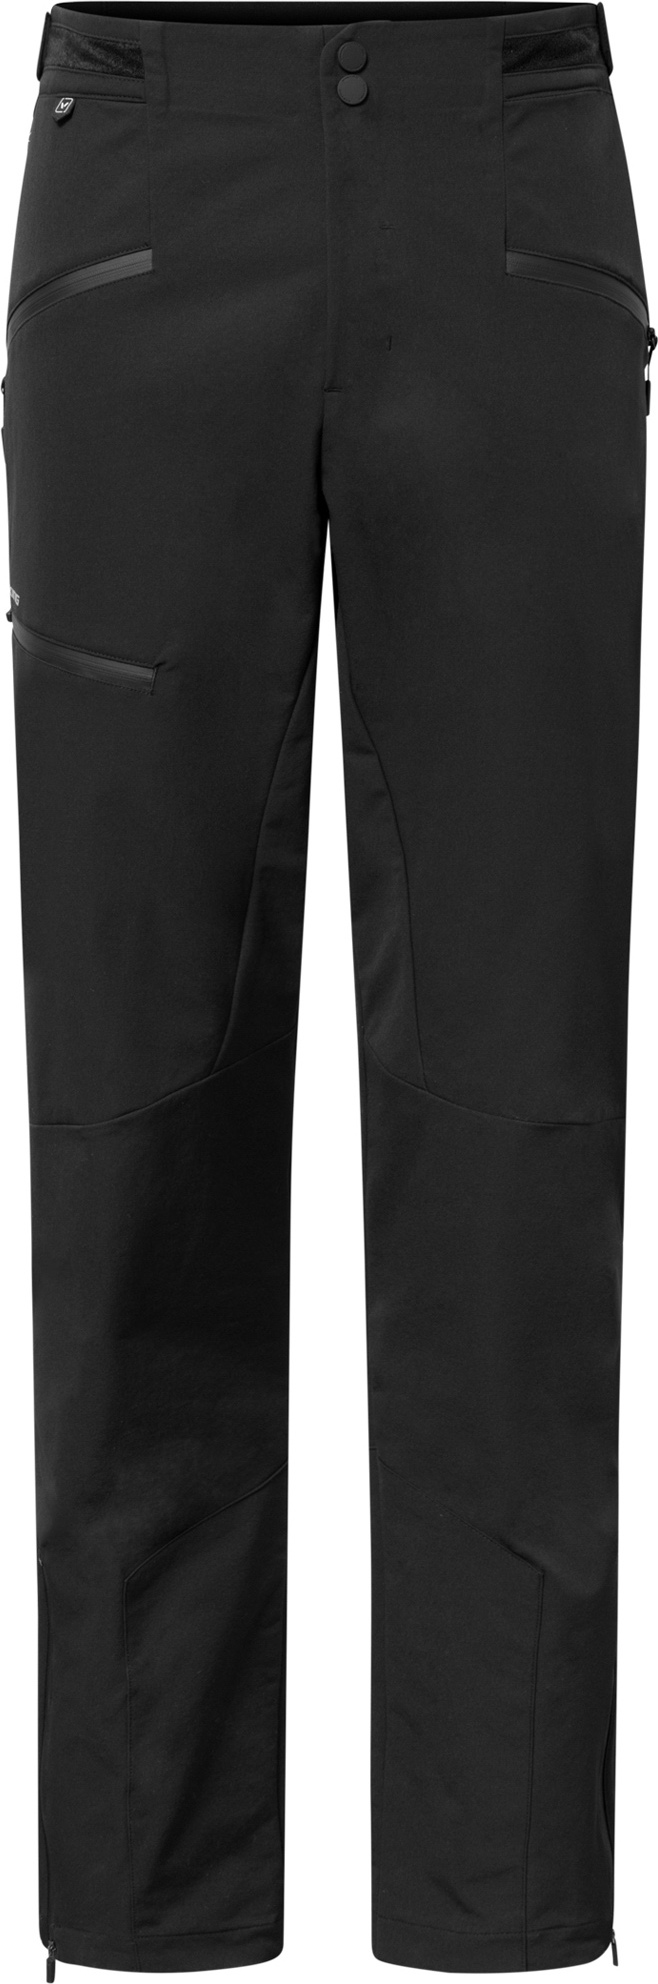 Pánské outdoorové kalhoty VIKING Expander Warm černá Velikost: L